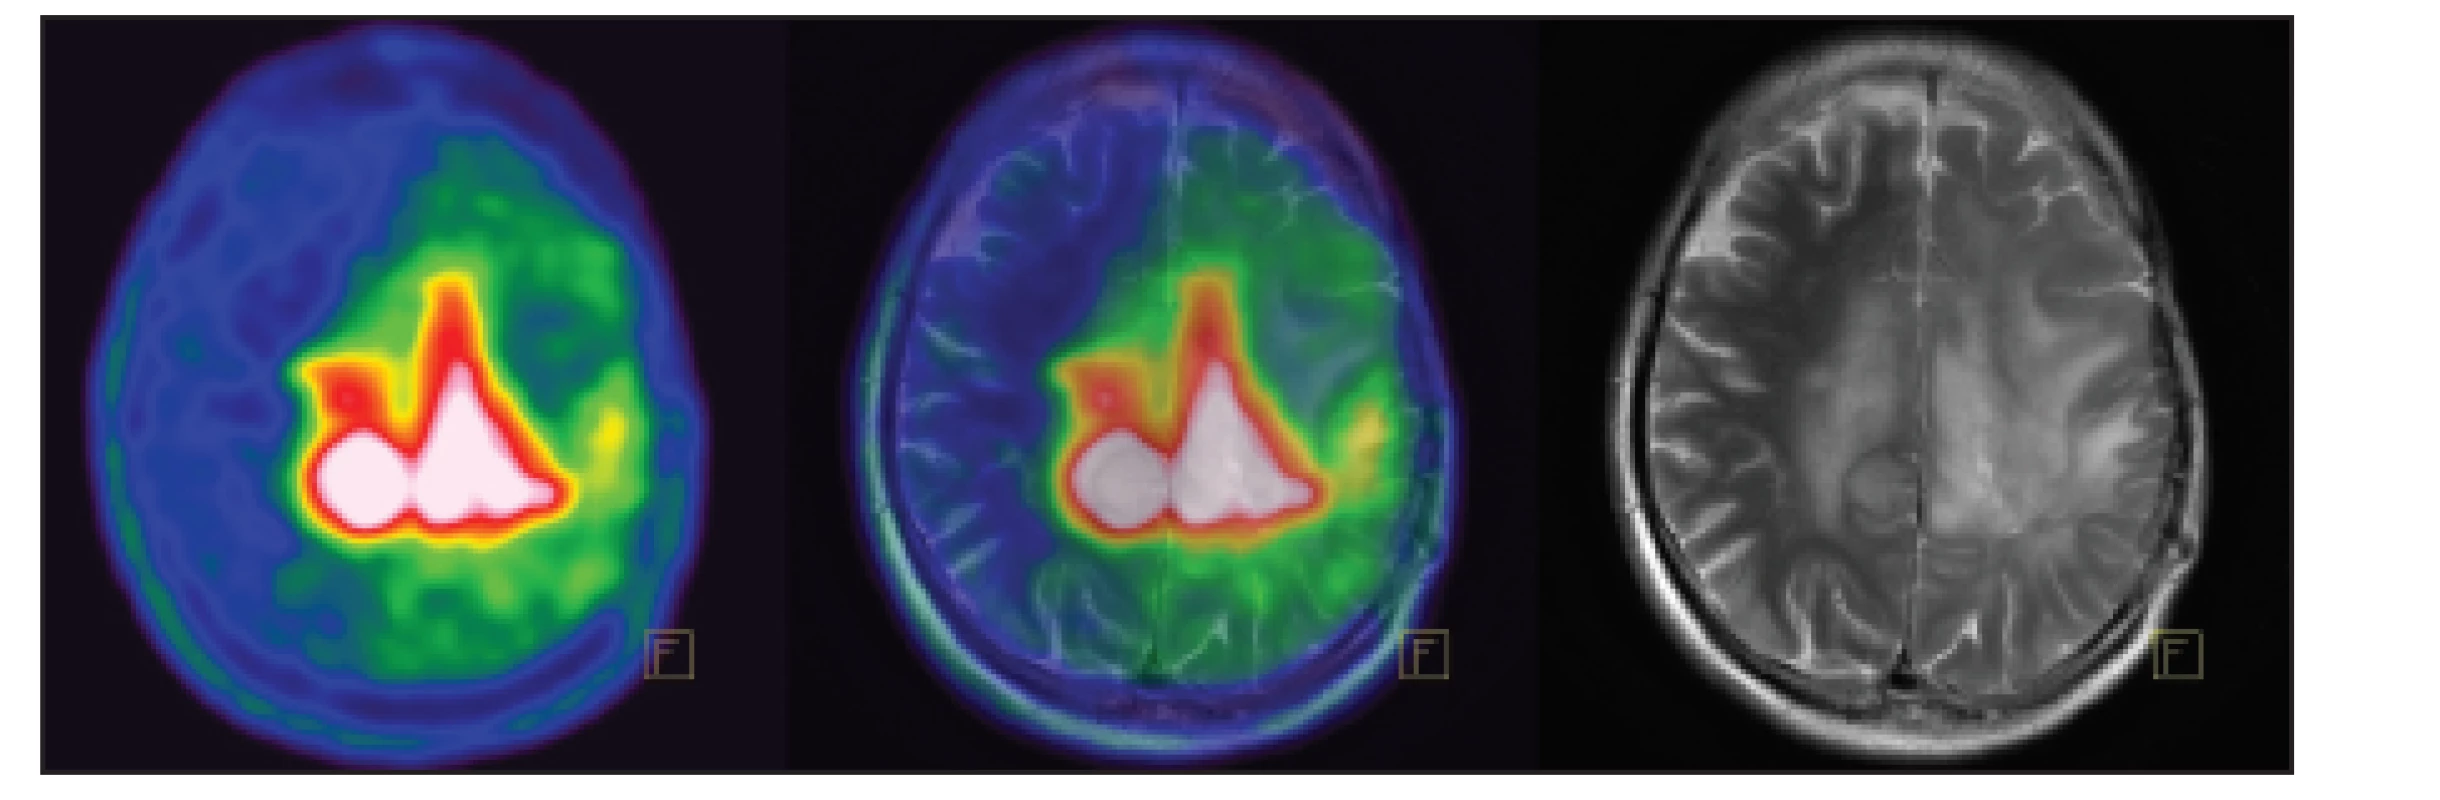 Pacient s astrocytomem G2 vlevo. V MET PET obrazu patrný přesah patologické akumulace přes střední čáru a větší
rozsah než v MR obrazu.